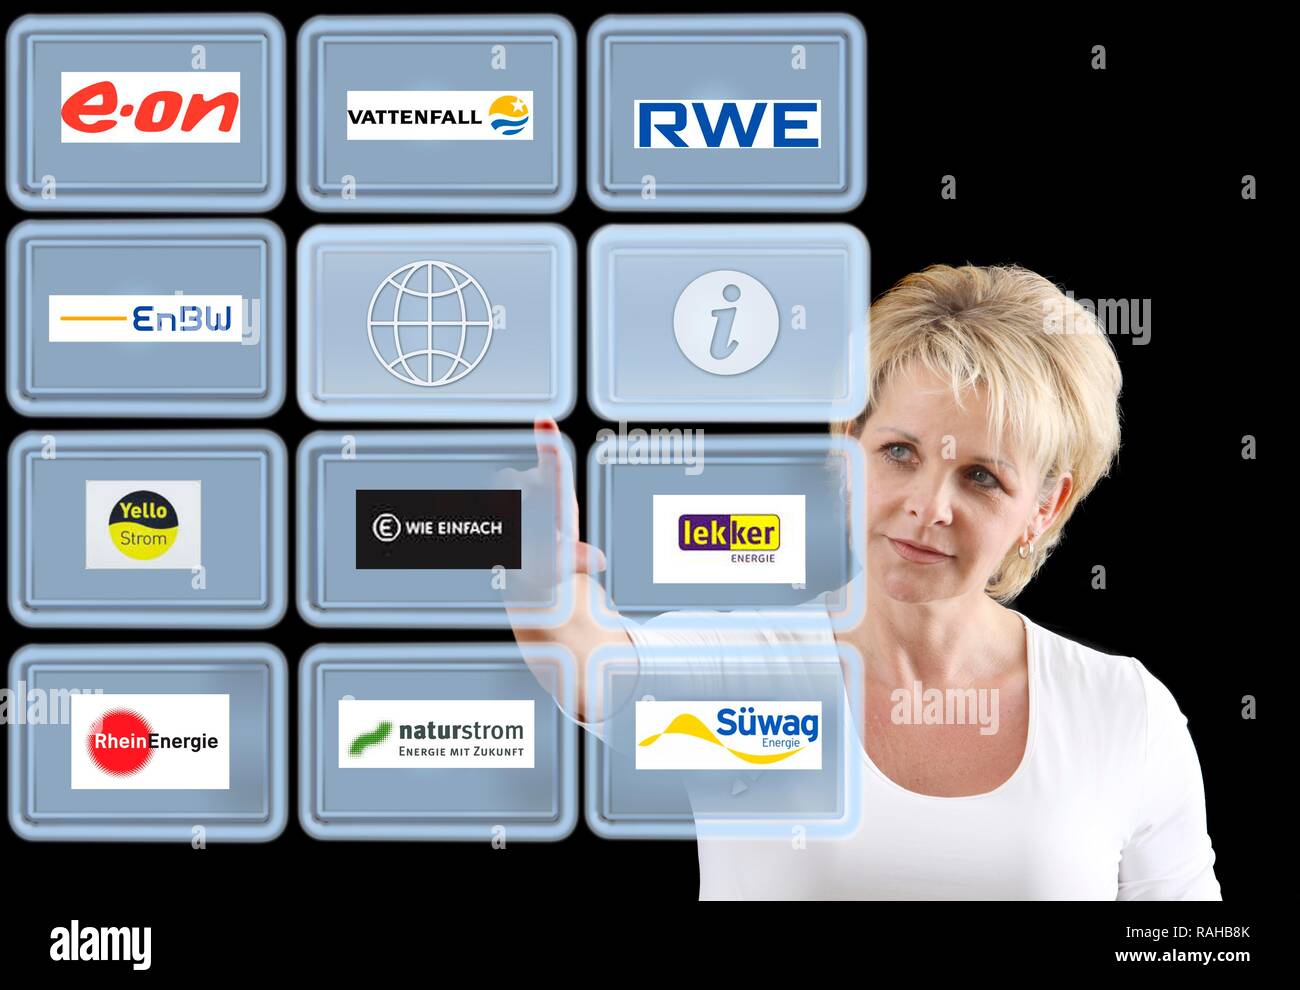 La donna lavora con uno schermo virtuale, touch screen, fornitori di potenza Foto Stock